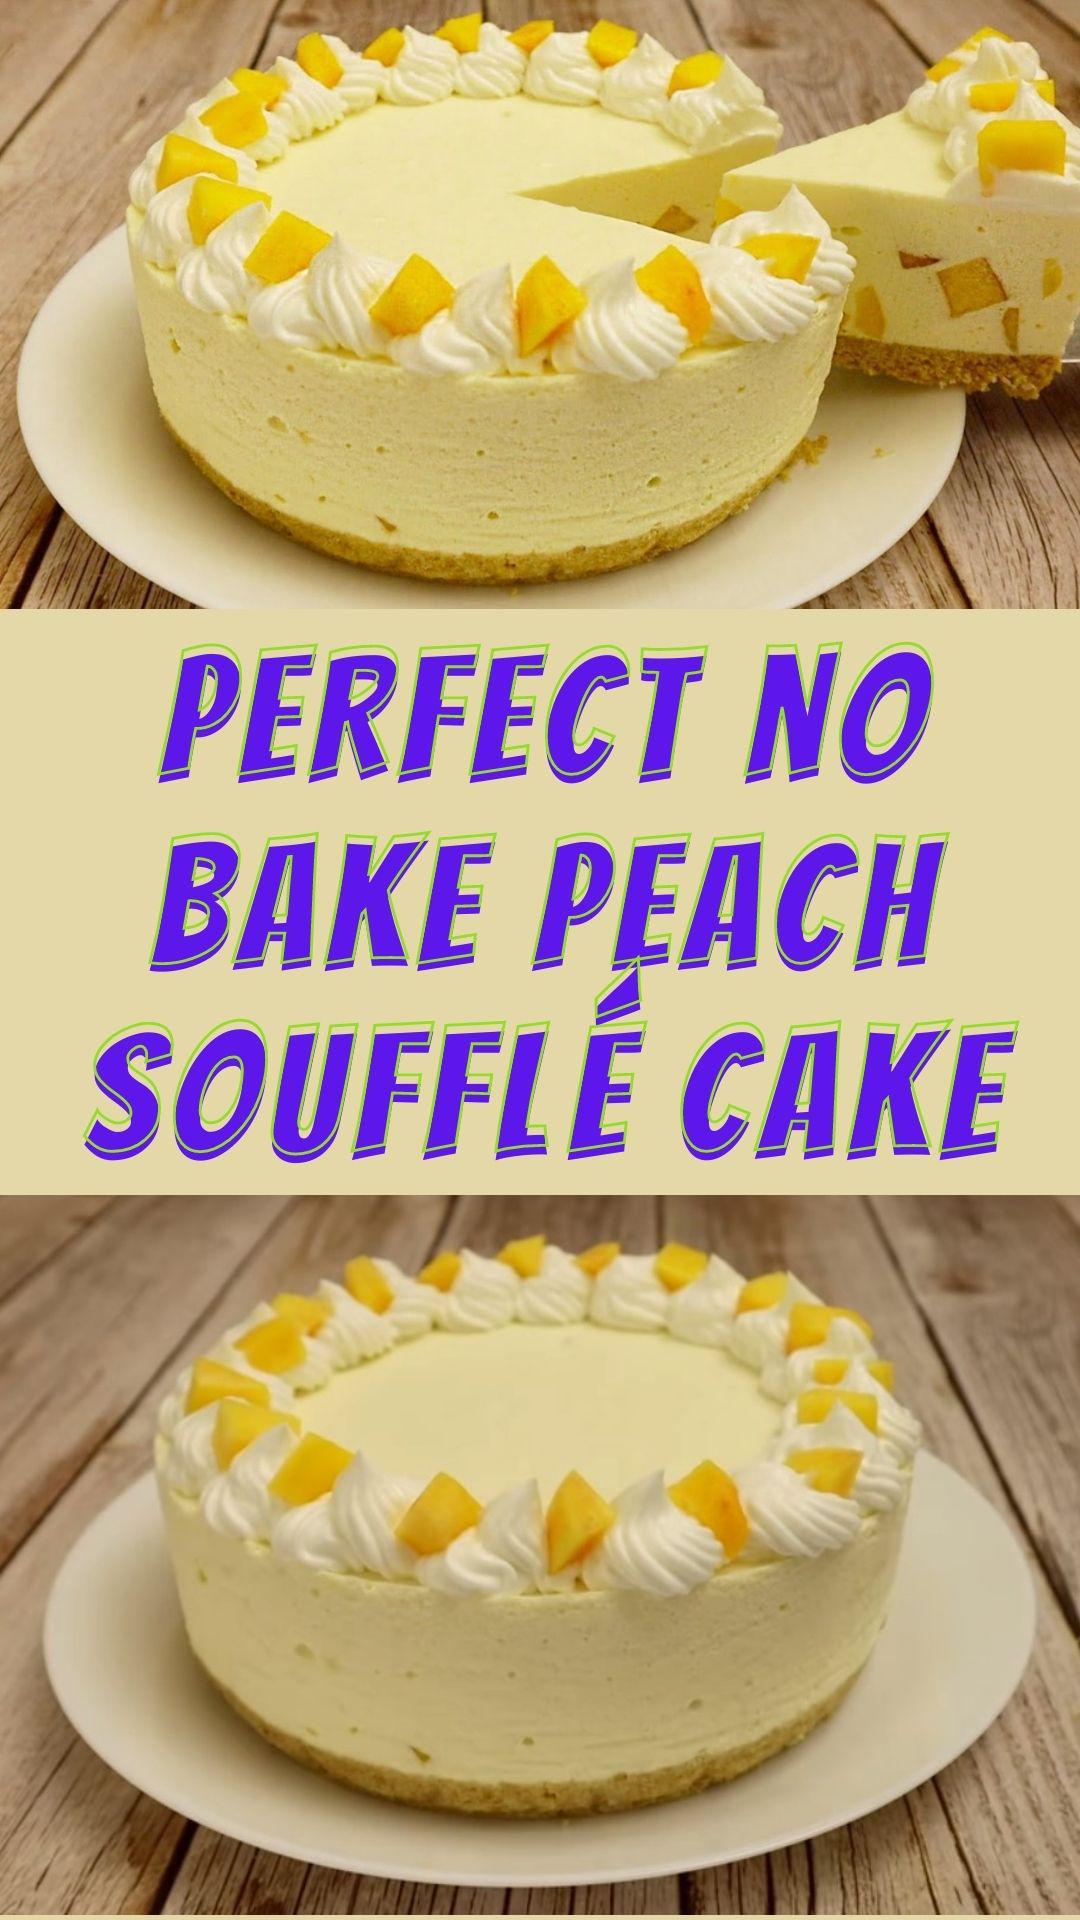 Perfect no bake peach soufflé cake